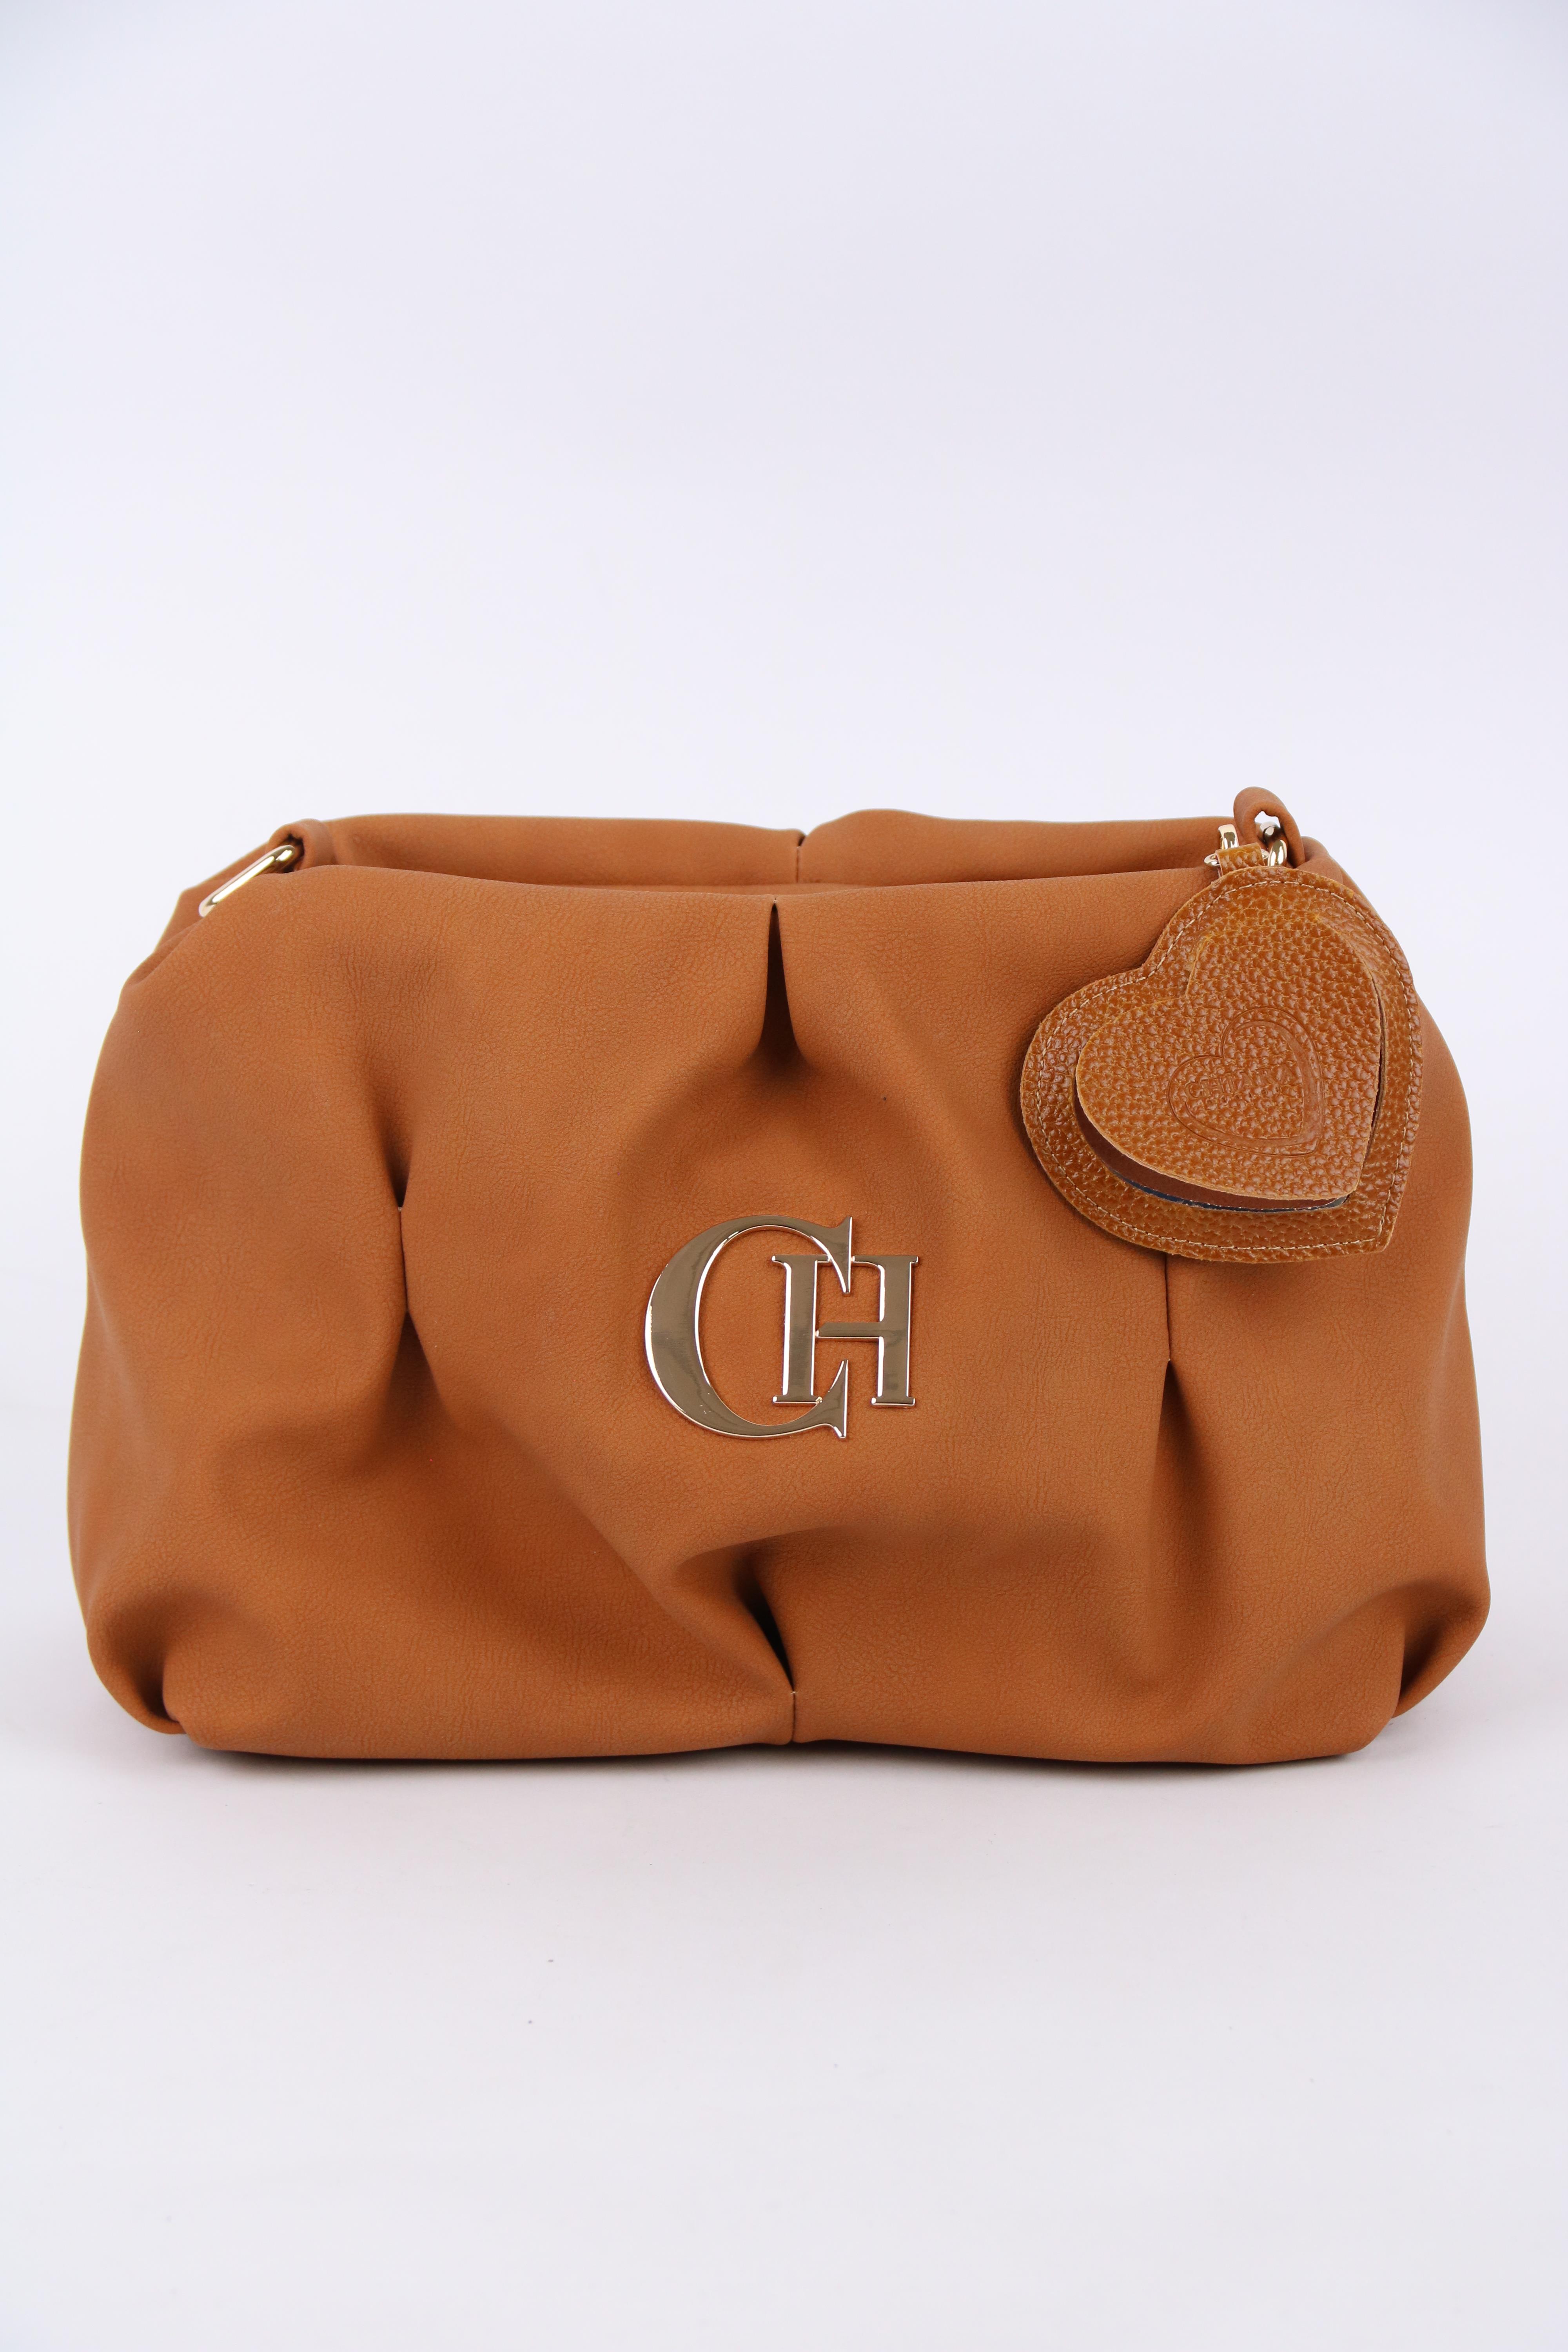 Chiara Woman's Bag E662 Balu